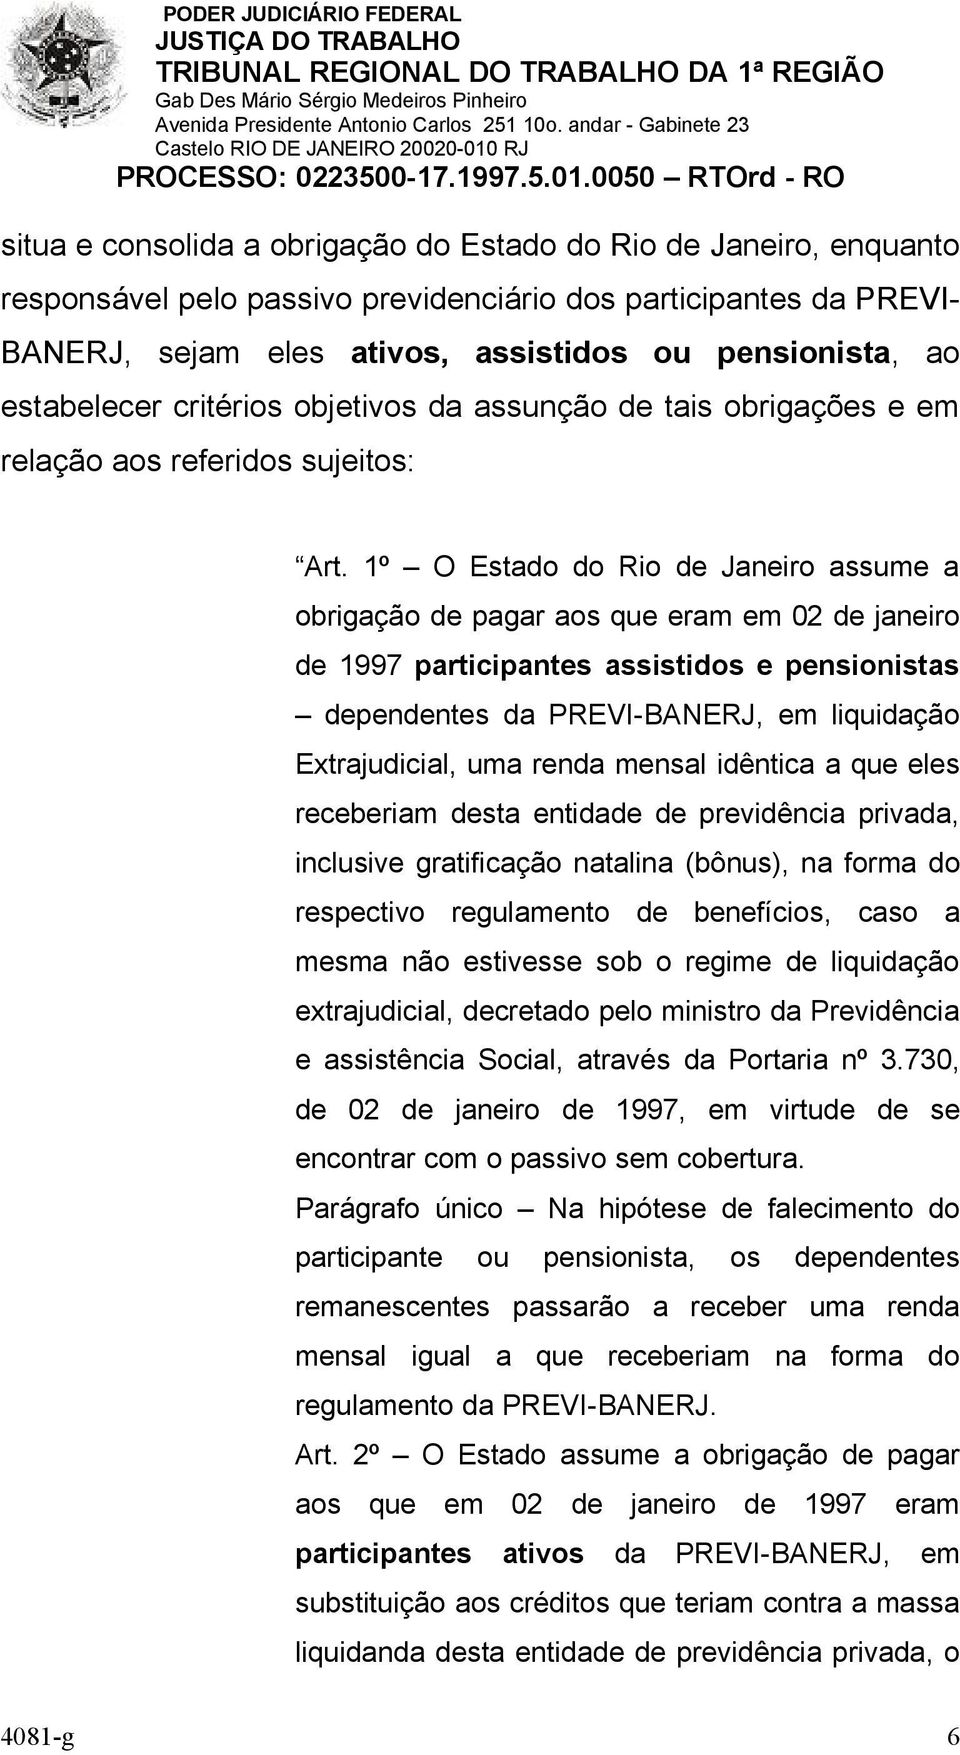 1º O Estado do Rio de Janeiro assume a obrigação de pagar aos que eram em 02 de janeiro de 1997 participantes assistidos e pensionistas dependentes da PREVI-BANERJ, em liquidação Extrajudicial, uma